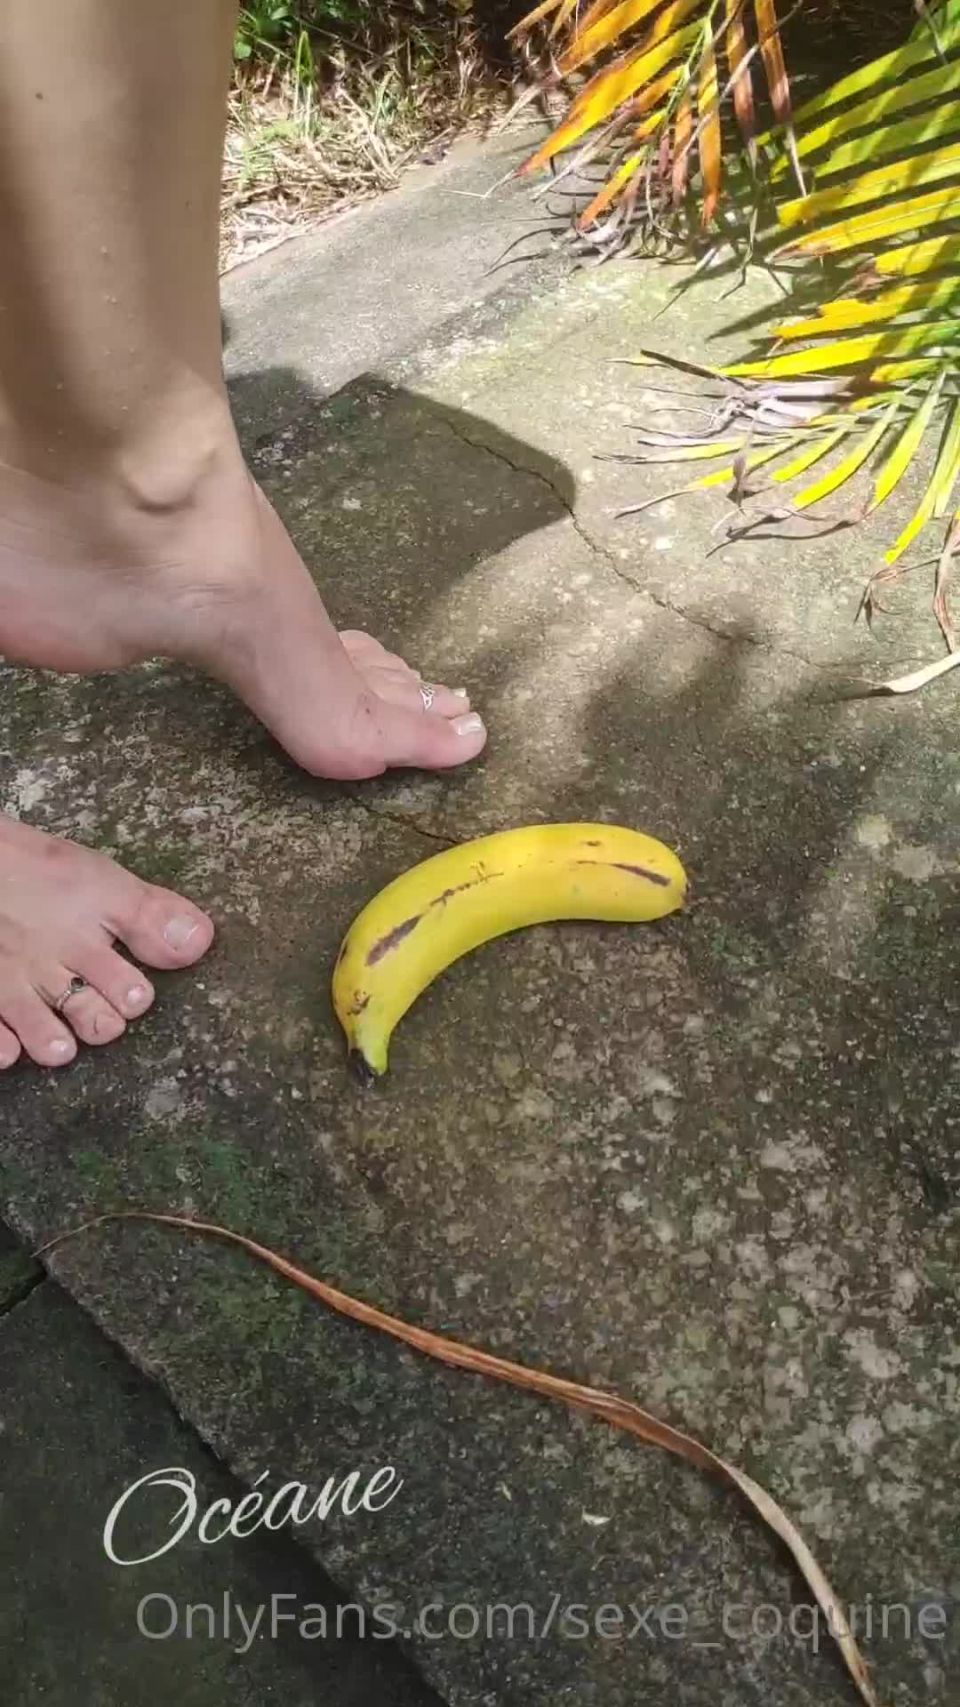 Sexe coquine Sexecoquine - une requte craser une banane avec mon pied nu et en tant nue dfi re 04-02-2021